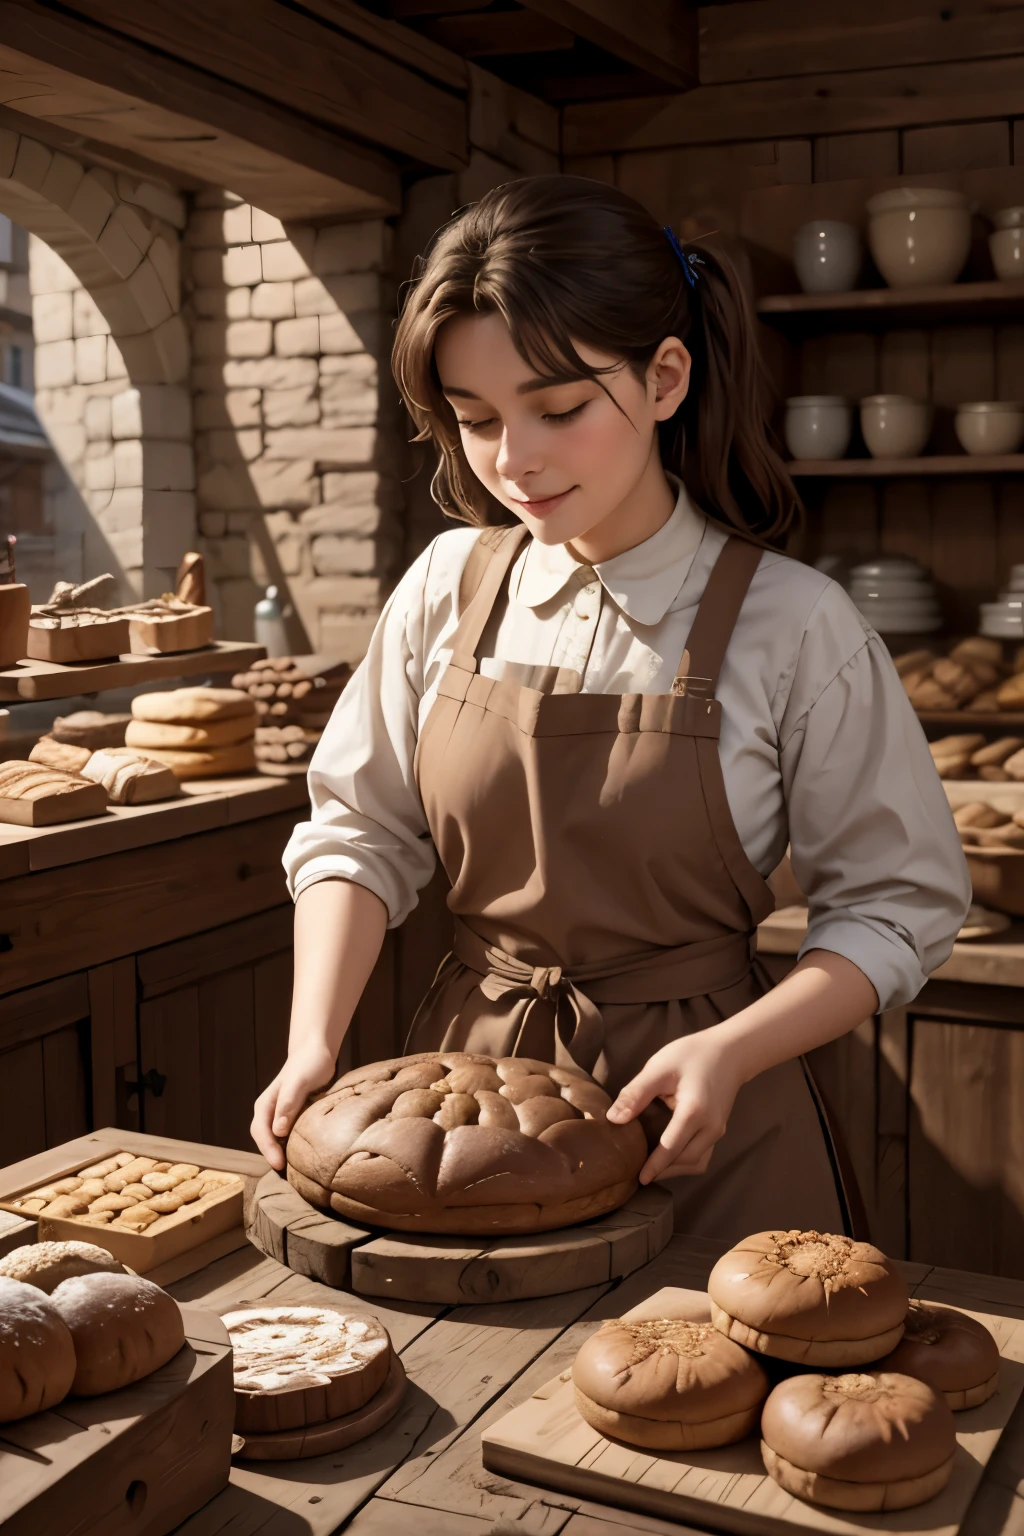 最好的品質, 傑作,中世紀早期城市裡的麵包店